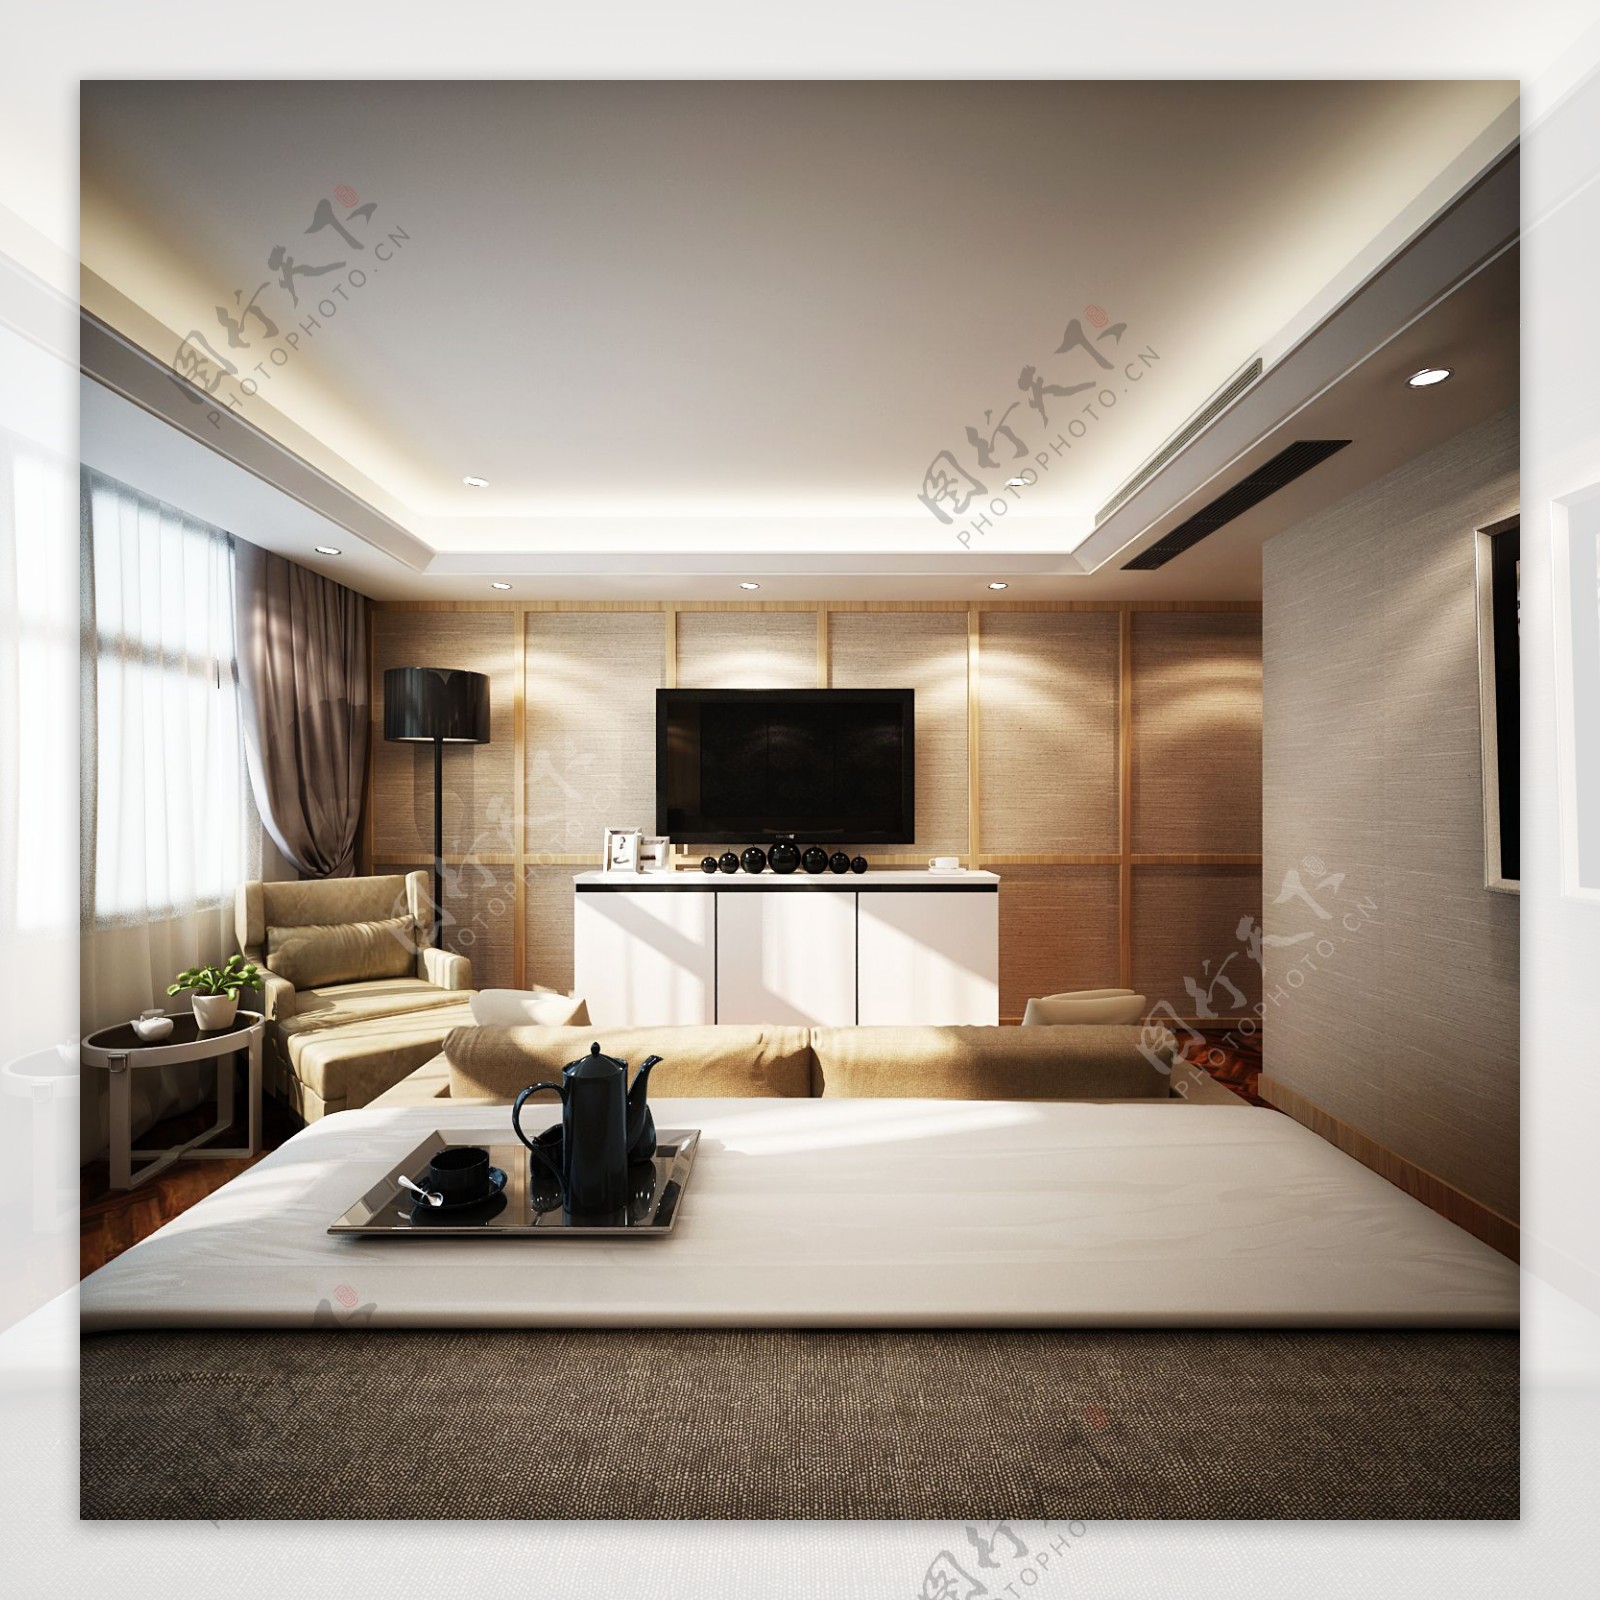 日式清新客厅浅色沙发室内装修效果图